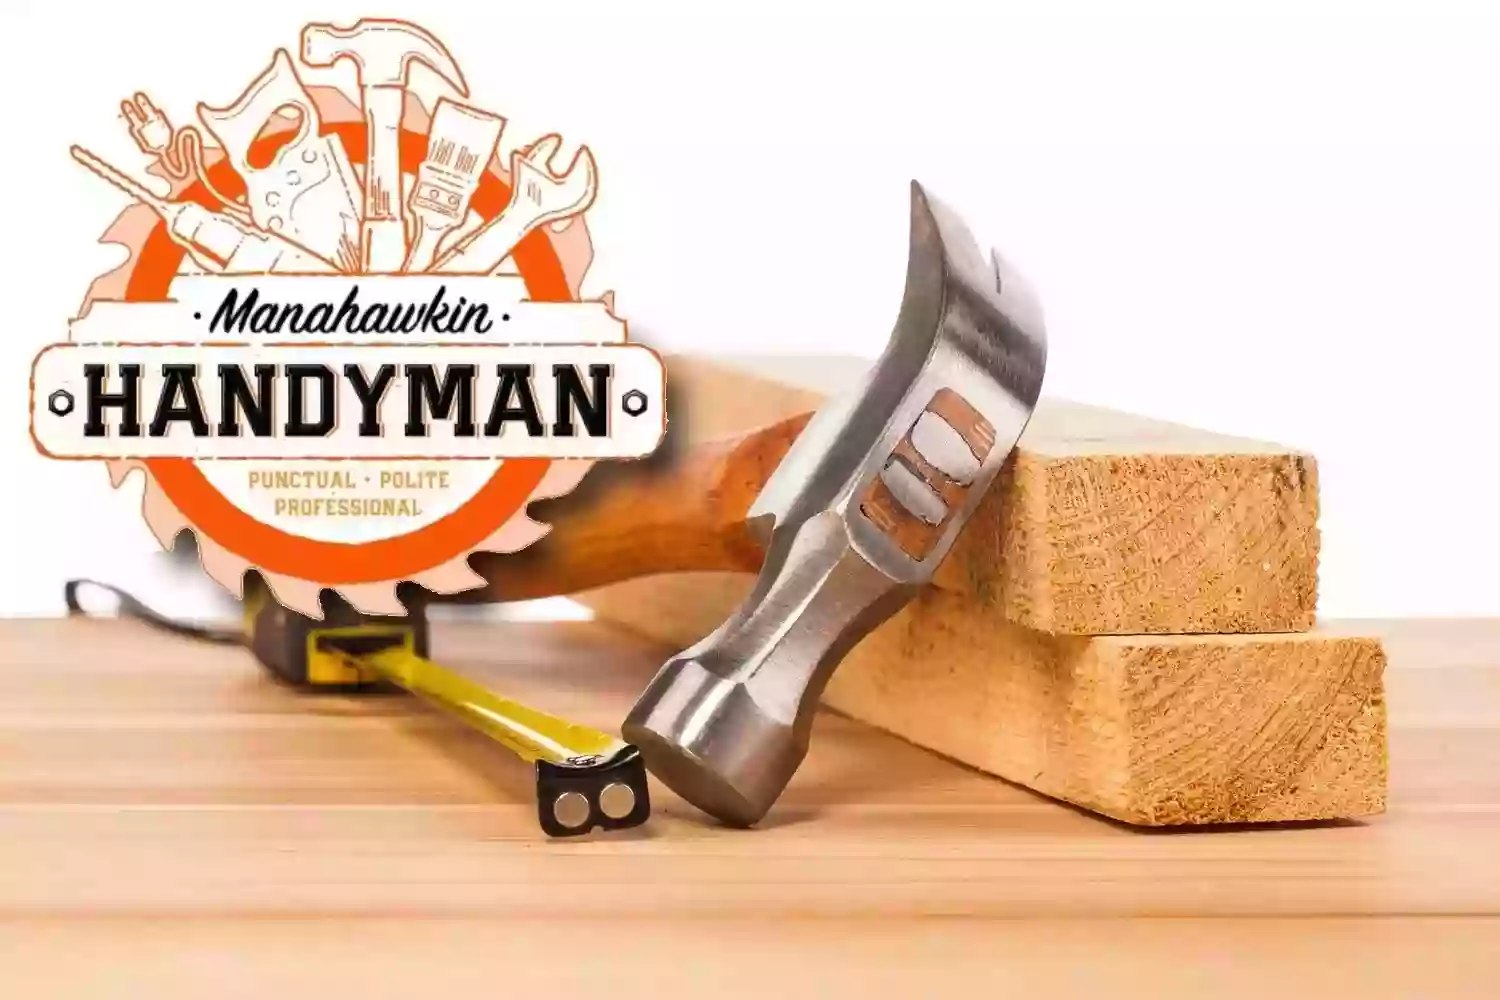 Manahawkin Handyman Services, LLC